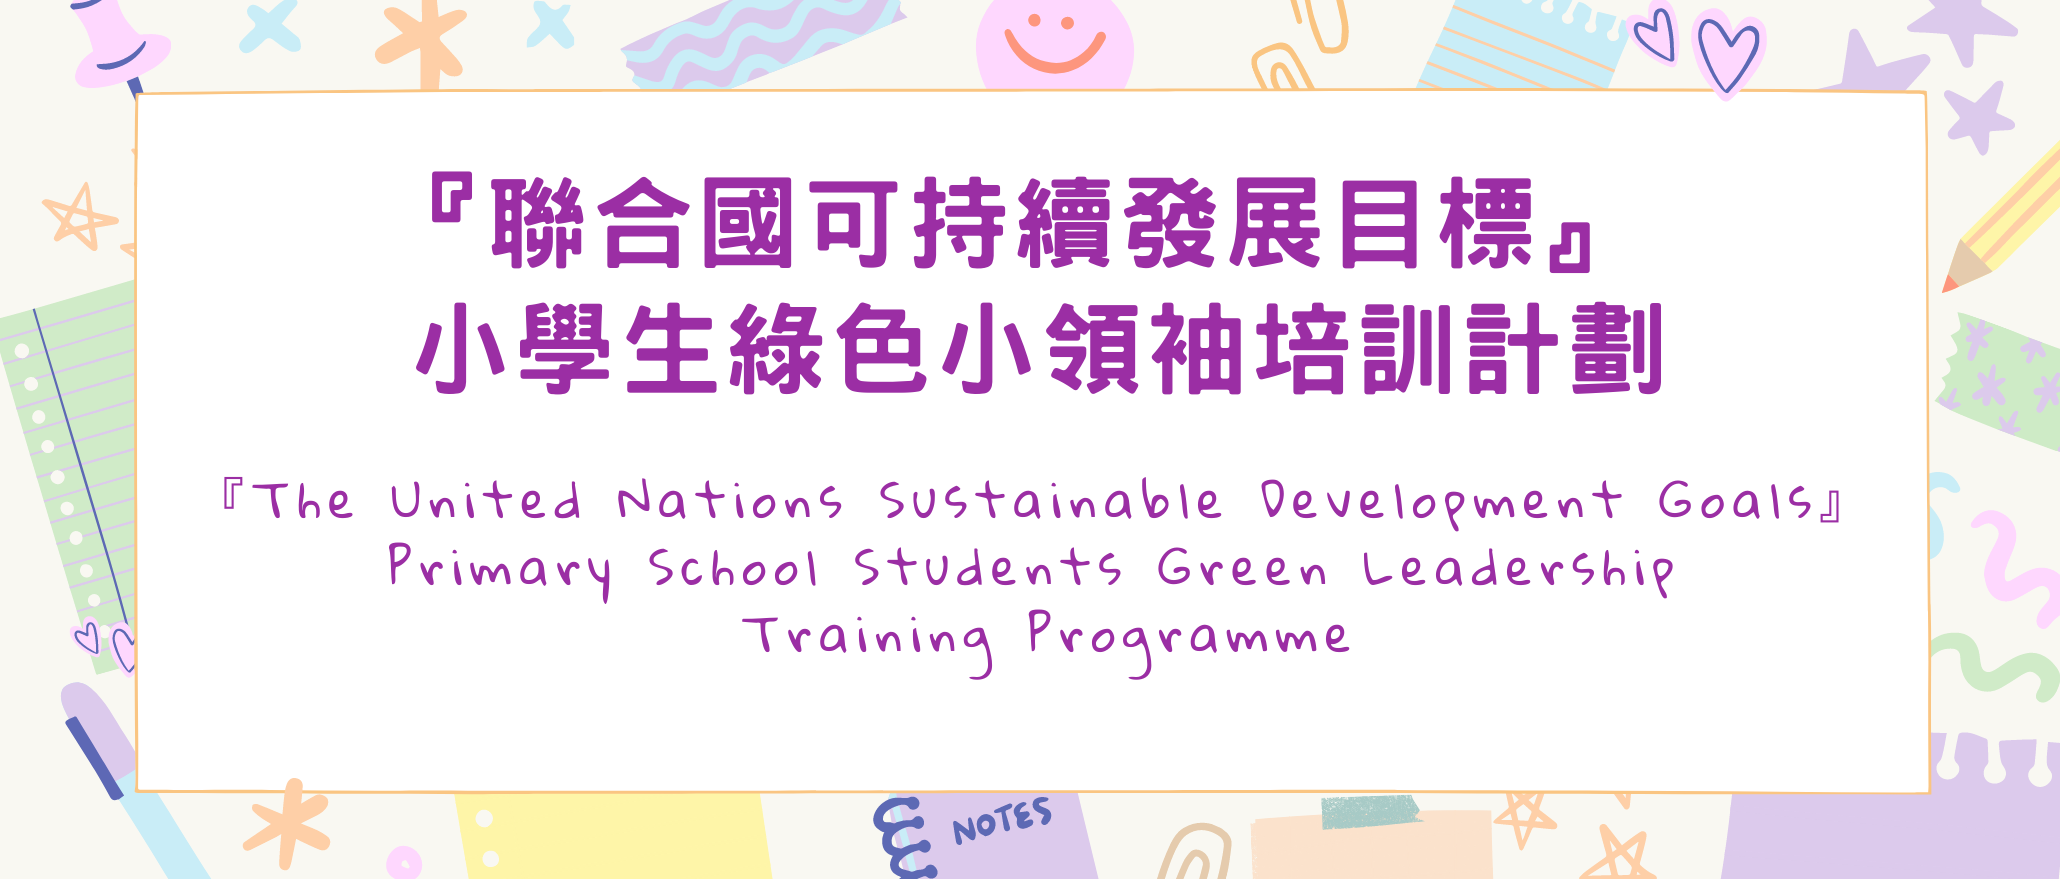 『聯合國可持續發展目標』 小學生綠色小領袖培訓計劃